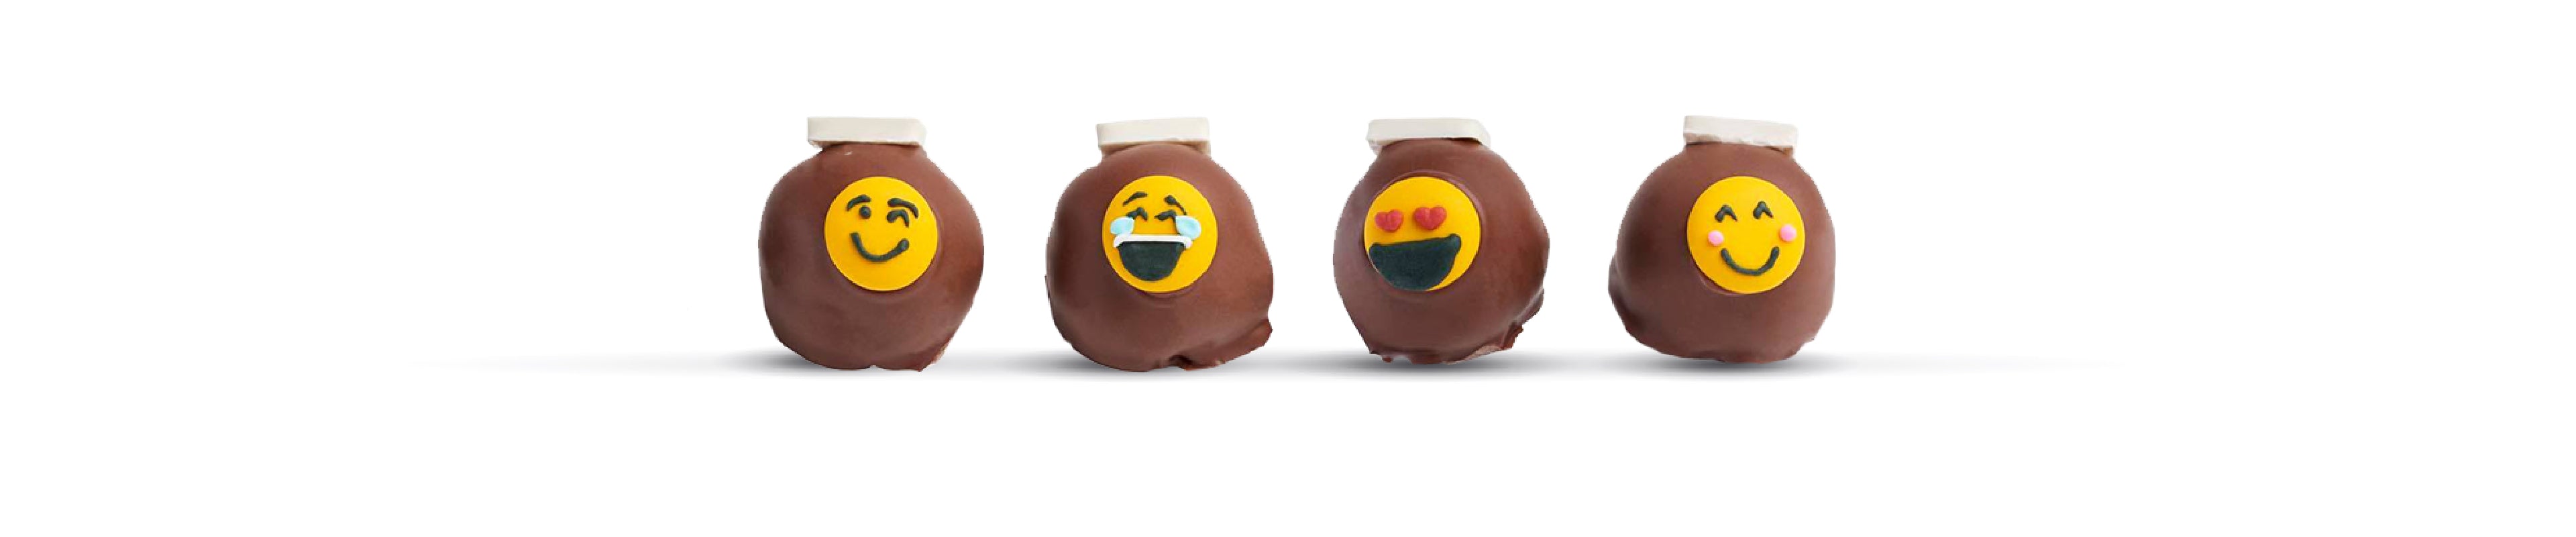 Chocolate Emoji's